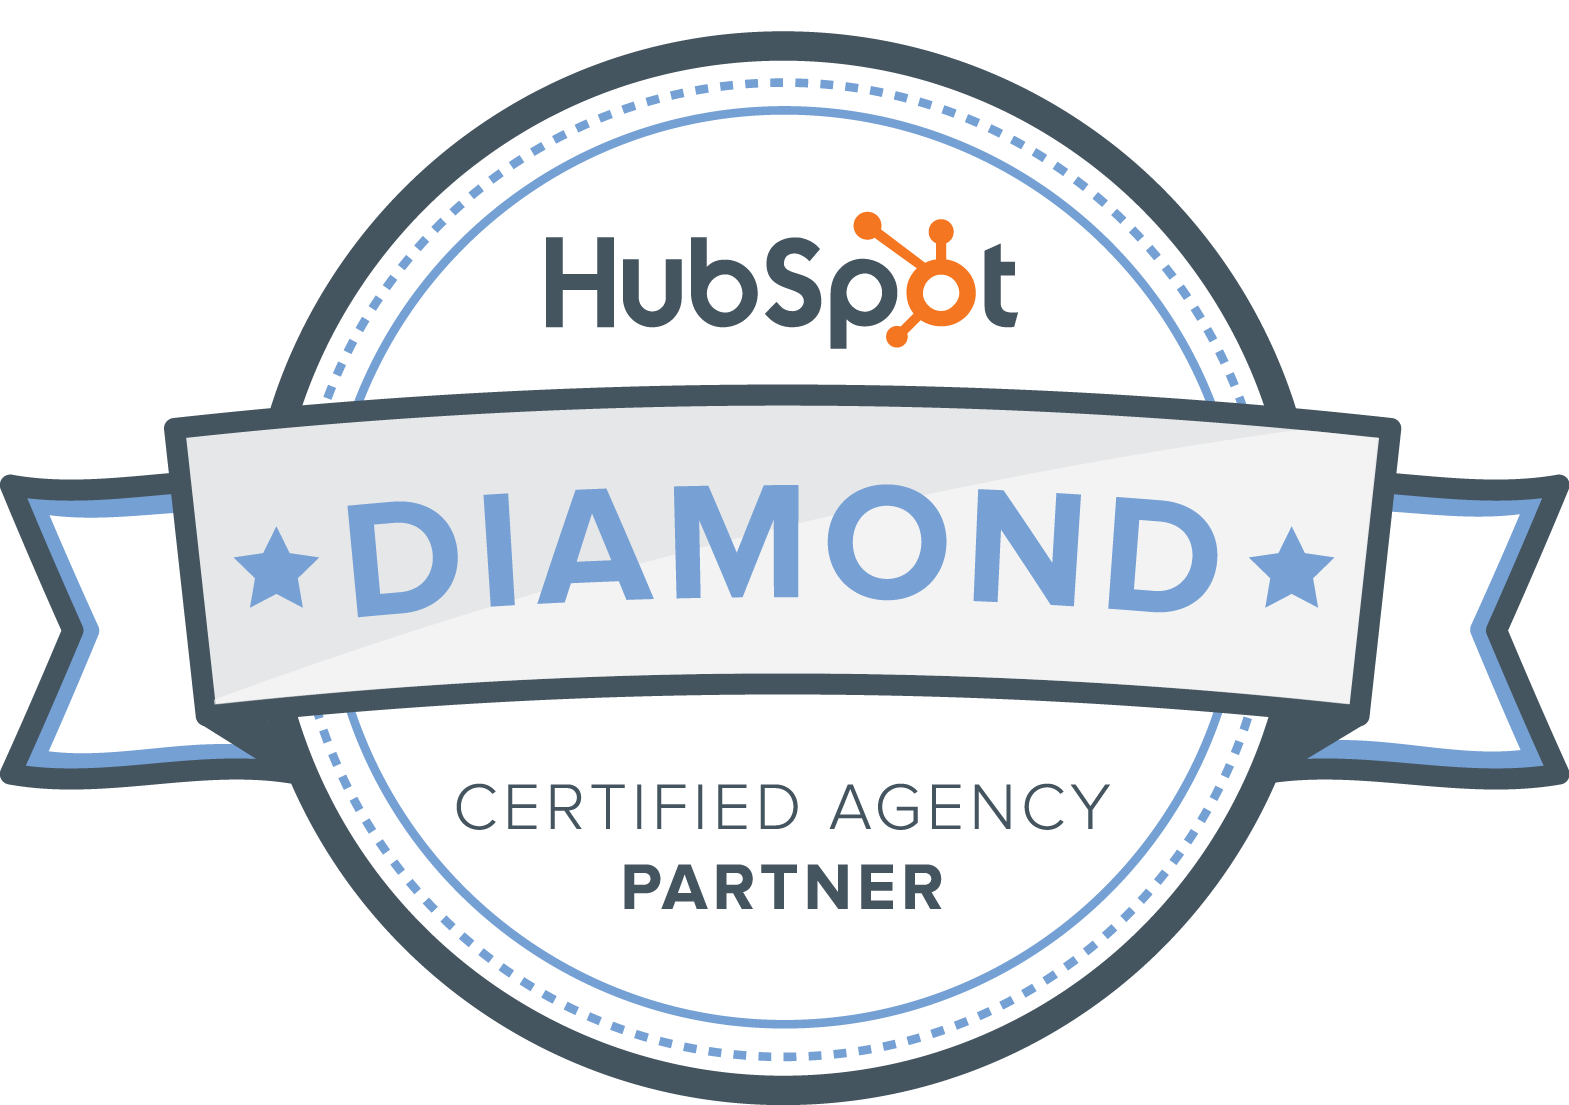 jdr-hubspot-Diamond-partner